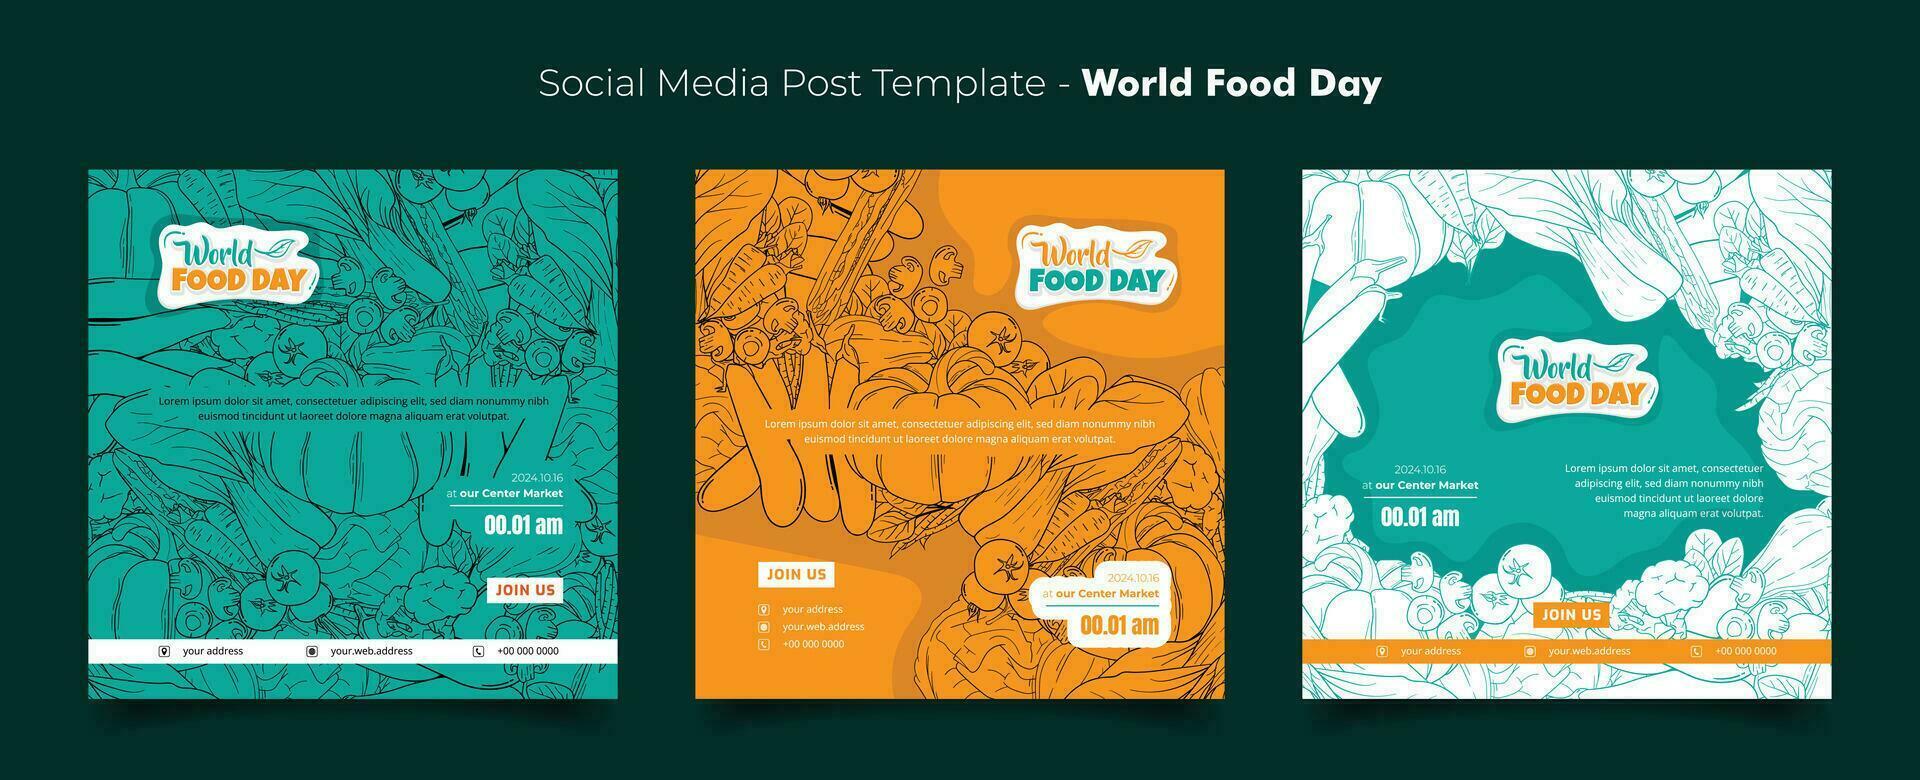 Sozial Medien Vorlage mit Linie Kunst Hand gezeichnet von Gemüse zum Welt Essen Tag Hintergrund Design vektor